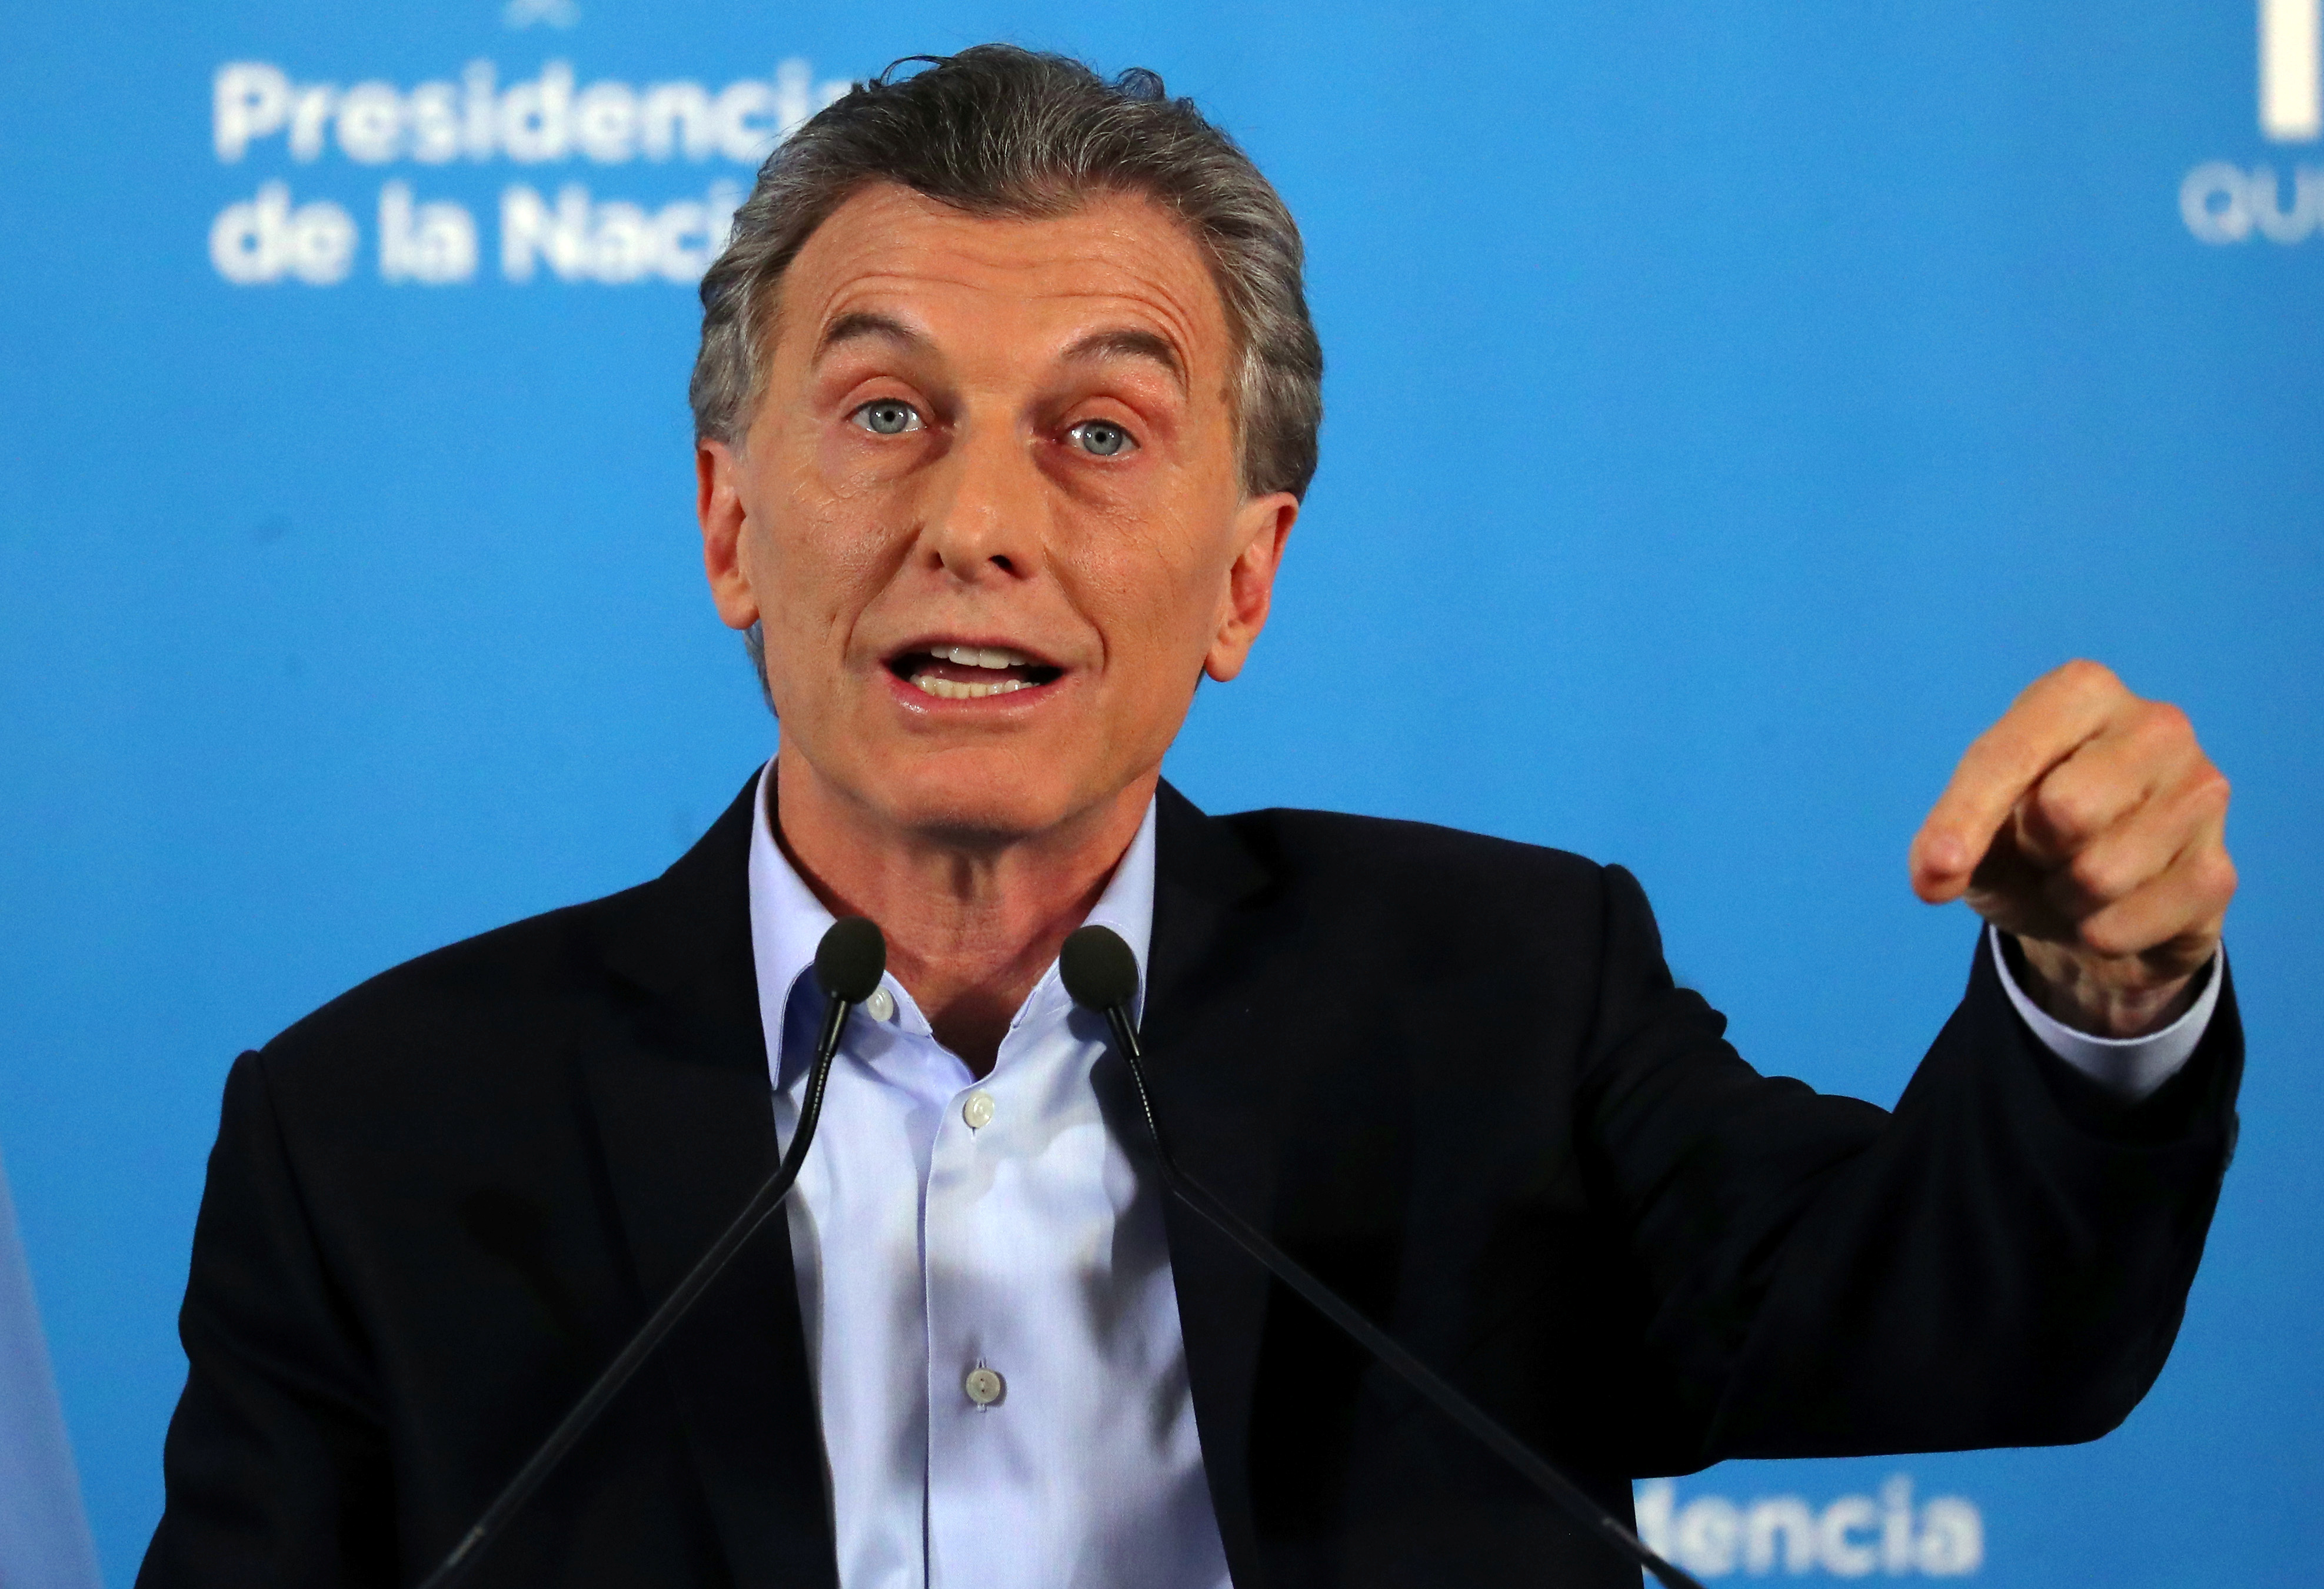 Macri quiere terminar con los “privilegios” para que todos respondan ante la justicia argentina